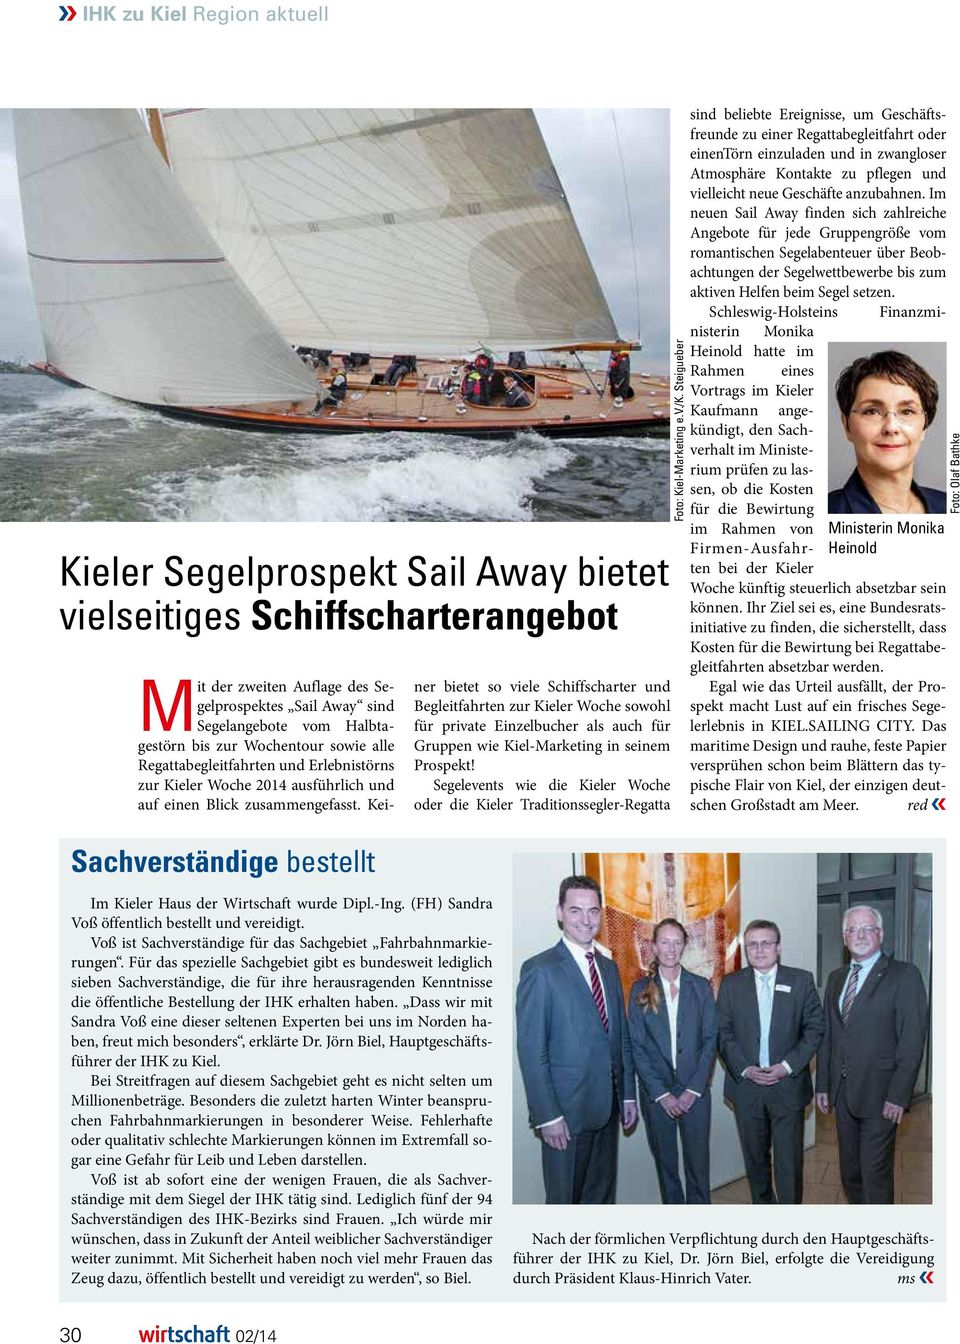 Keiner bietet so viele Schiffscharter und Begleitfahrten zur Kieler Woche sowohl für private Einzelbucher als auch für Gruppen wie Kiel-Marketing in seinem Prospekt!